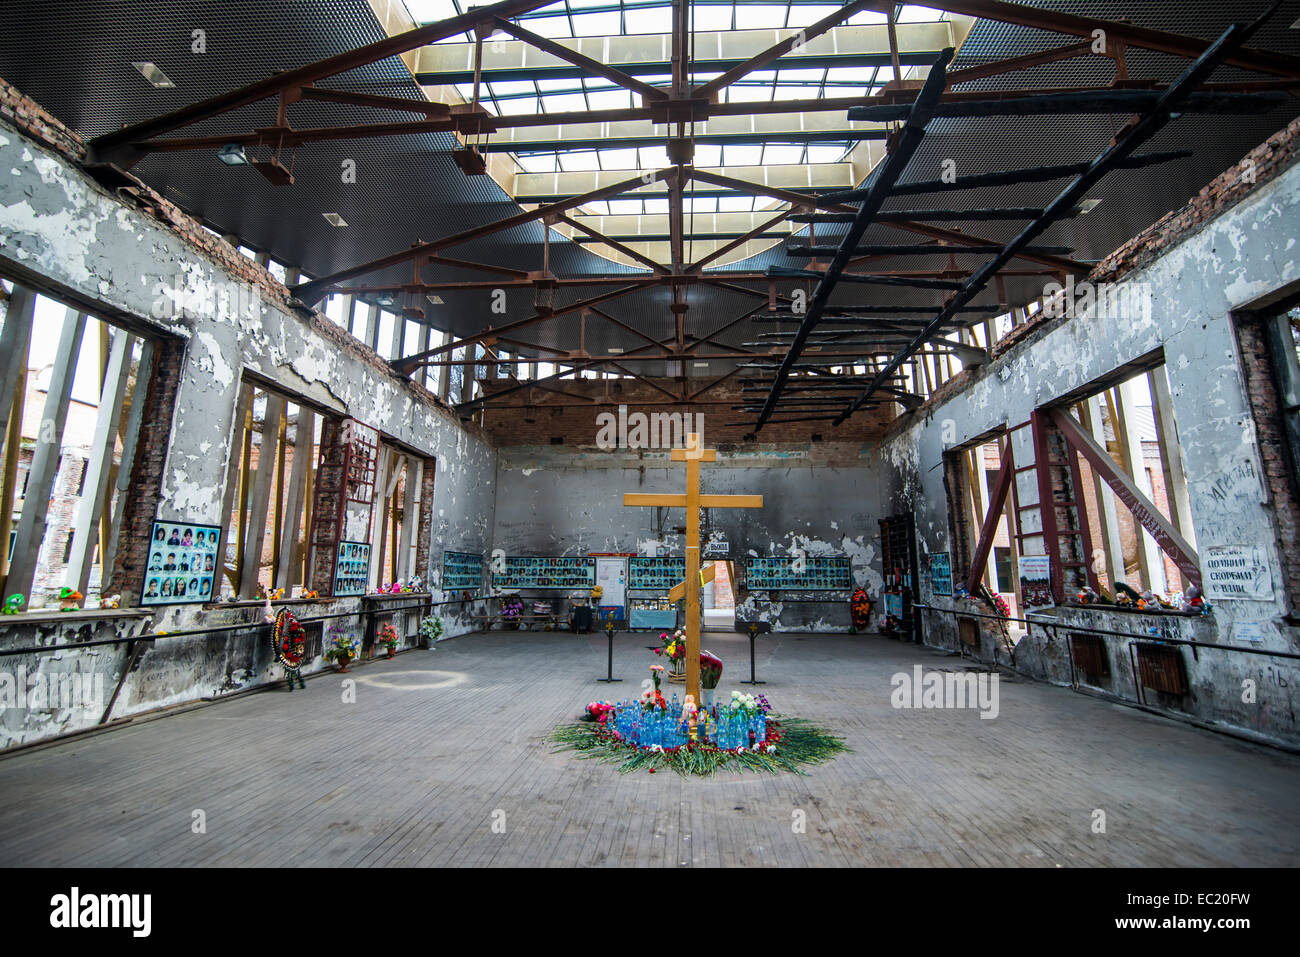 L'école de Beslan, Memorial crise des otages, dans l'ancienne salle de sport où le massacre s'est produit, République d'Ossétie du nord-Caucase, Alania Banque D'Images